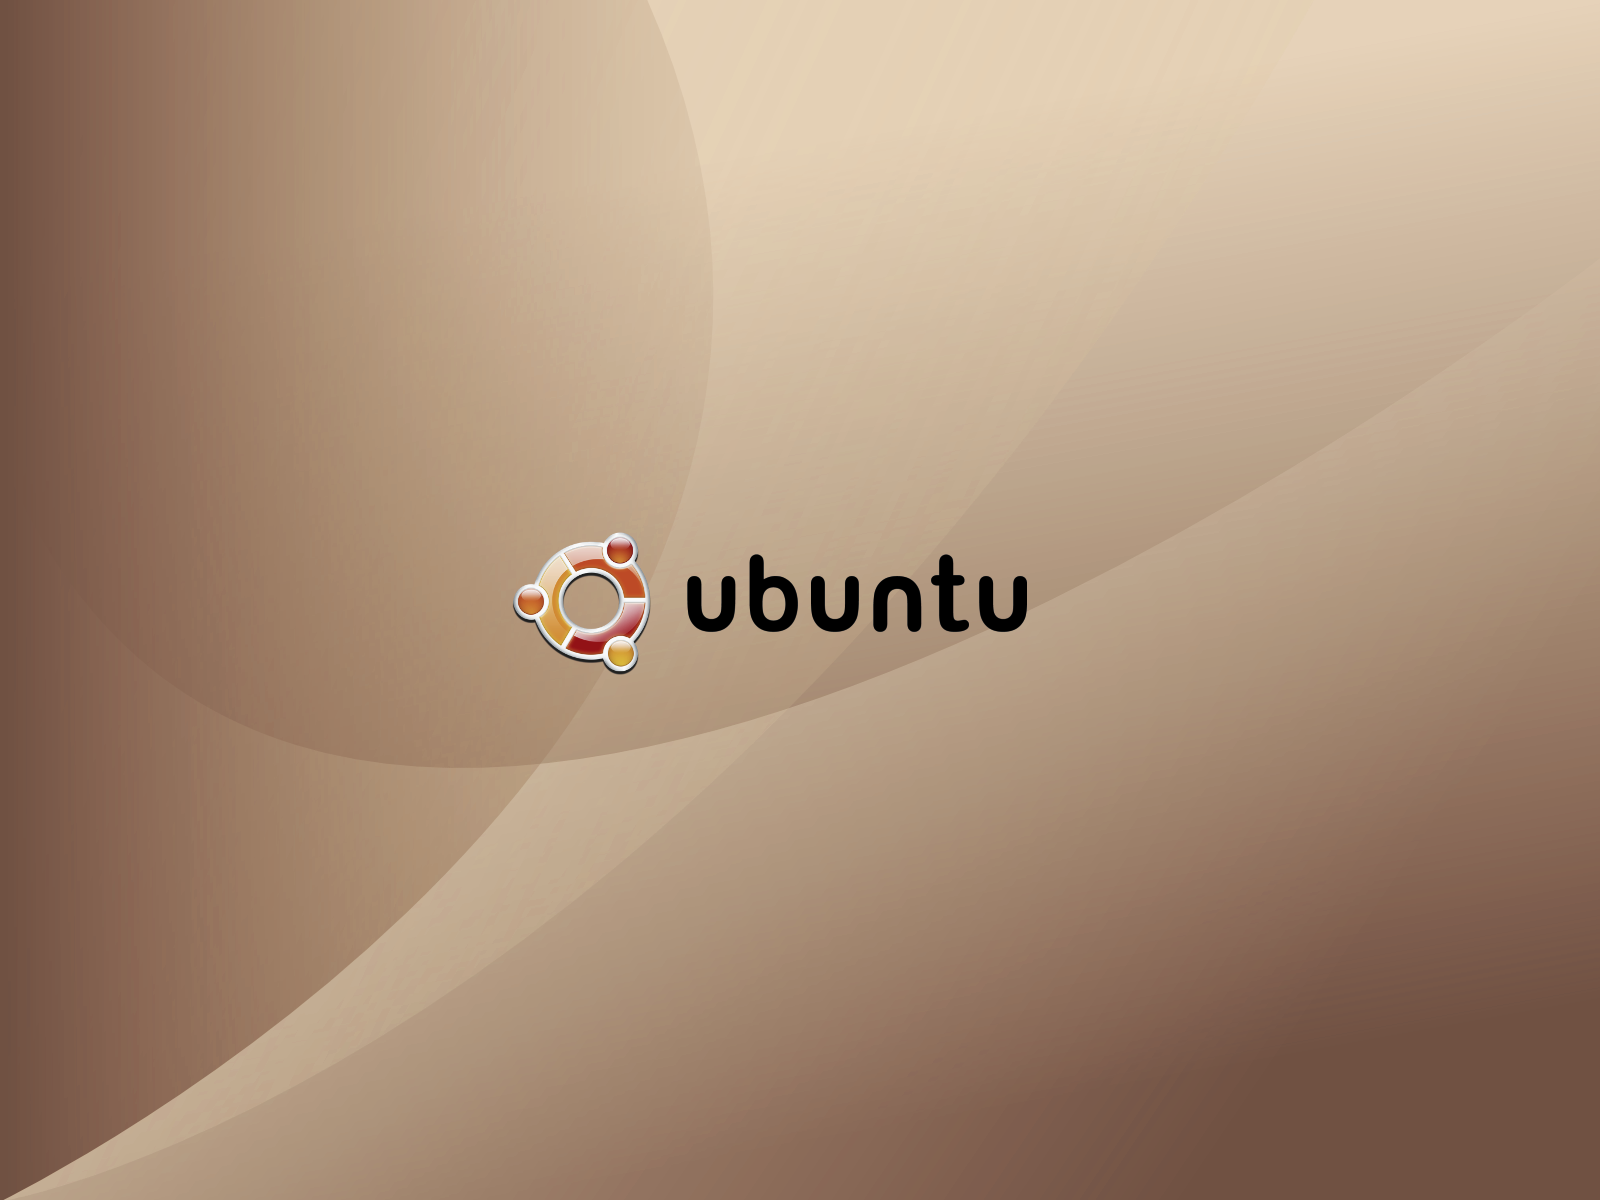 Wallpaper_base_Ubuntu_modifica_by_iroquis.png